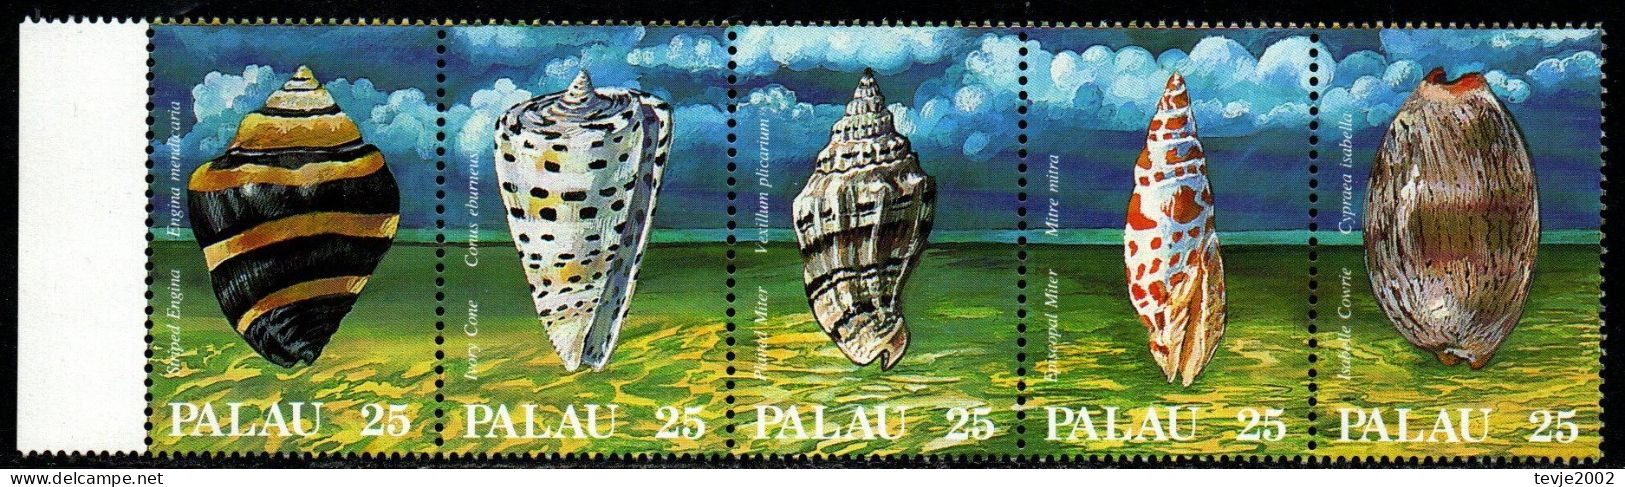 Palau 1988 - Mi.Nr. 230 - 234 - Postfrisch MNH - Tiere Animals Meeresschnecken Snails - Maritiem Leven